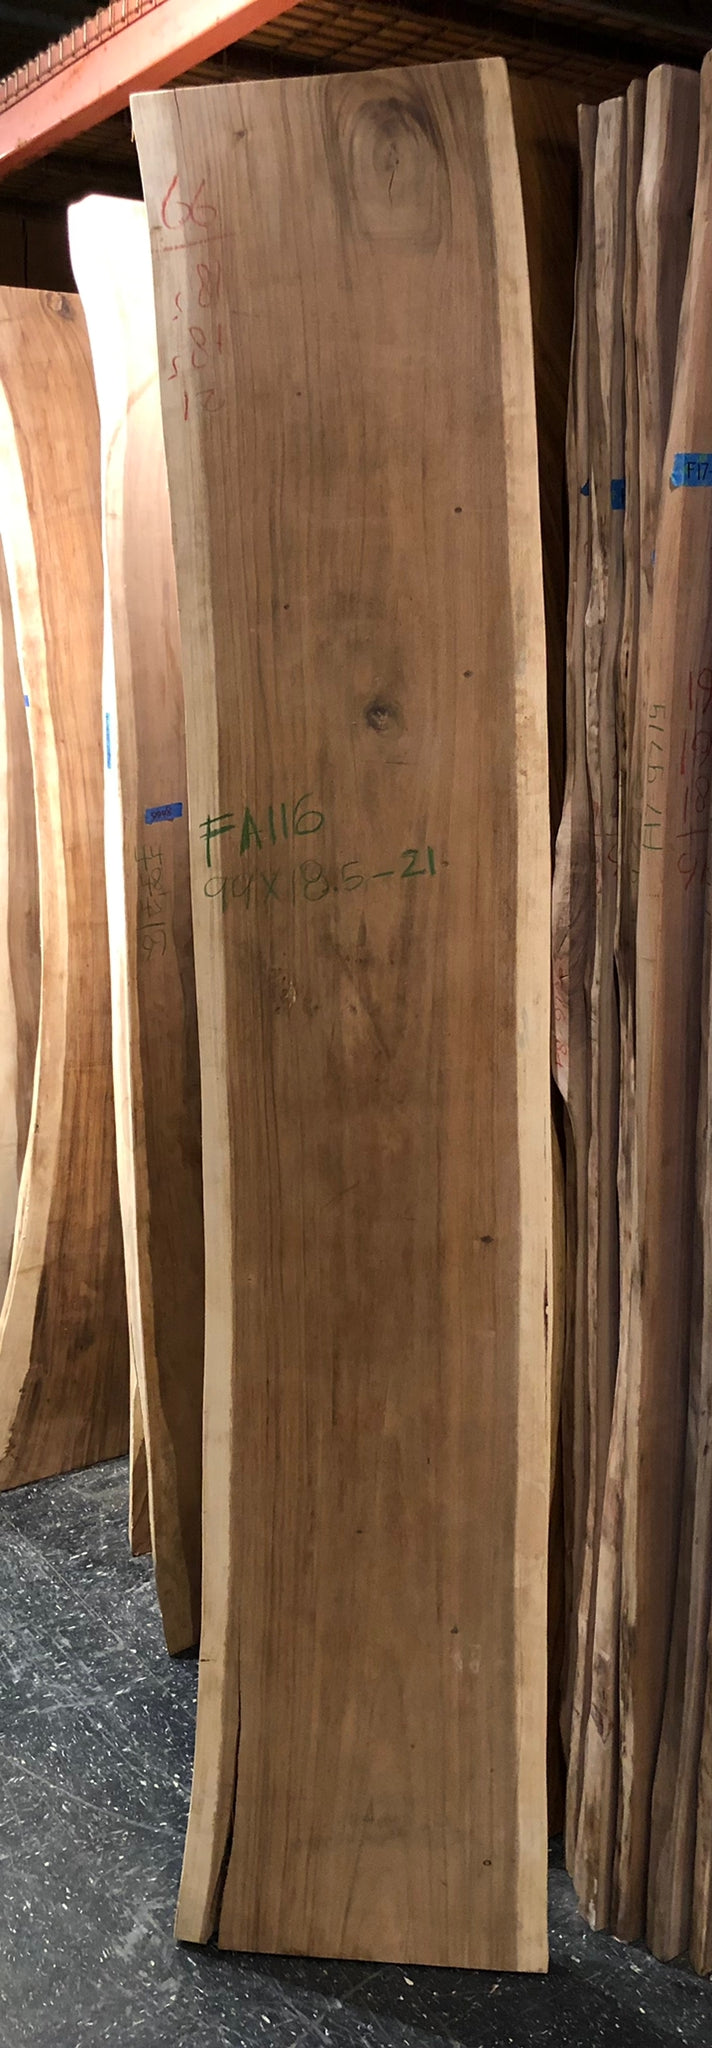 FA116-9921 Live edge acacia wood 99